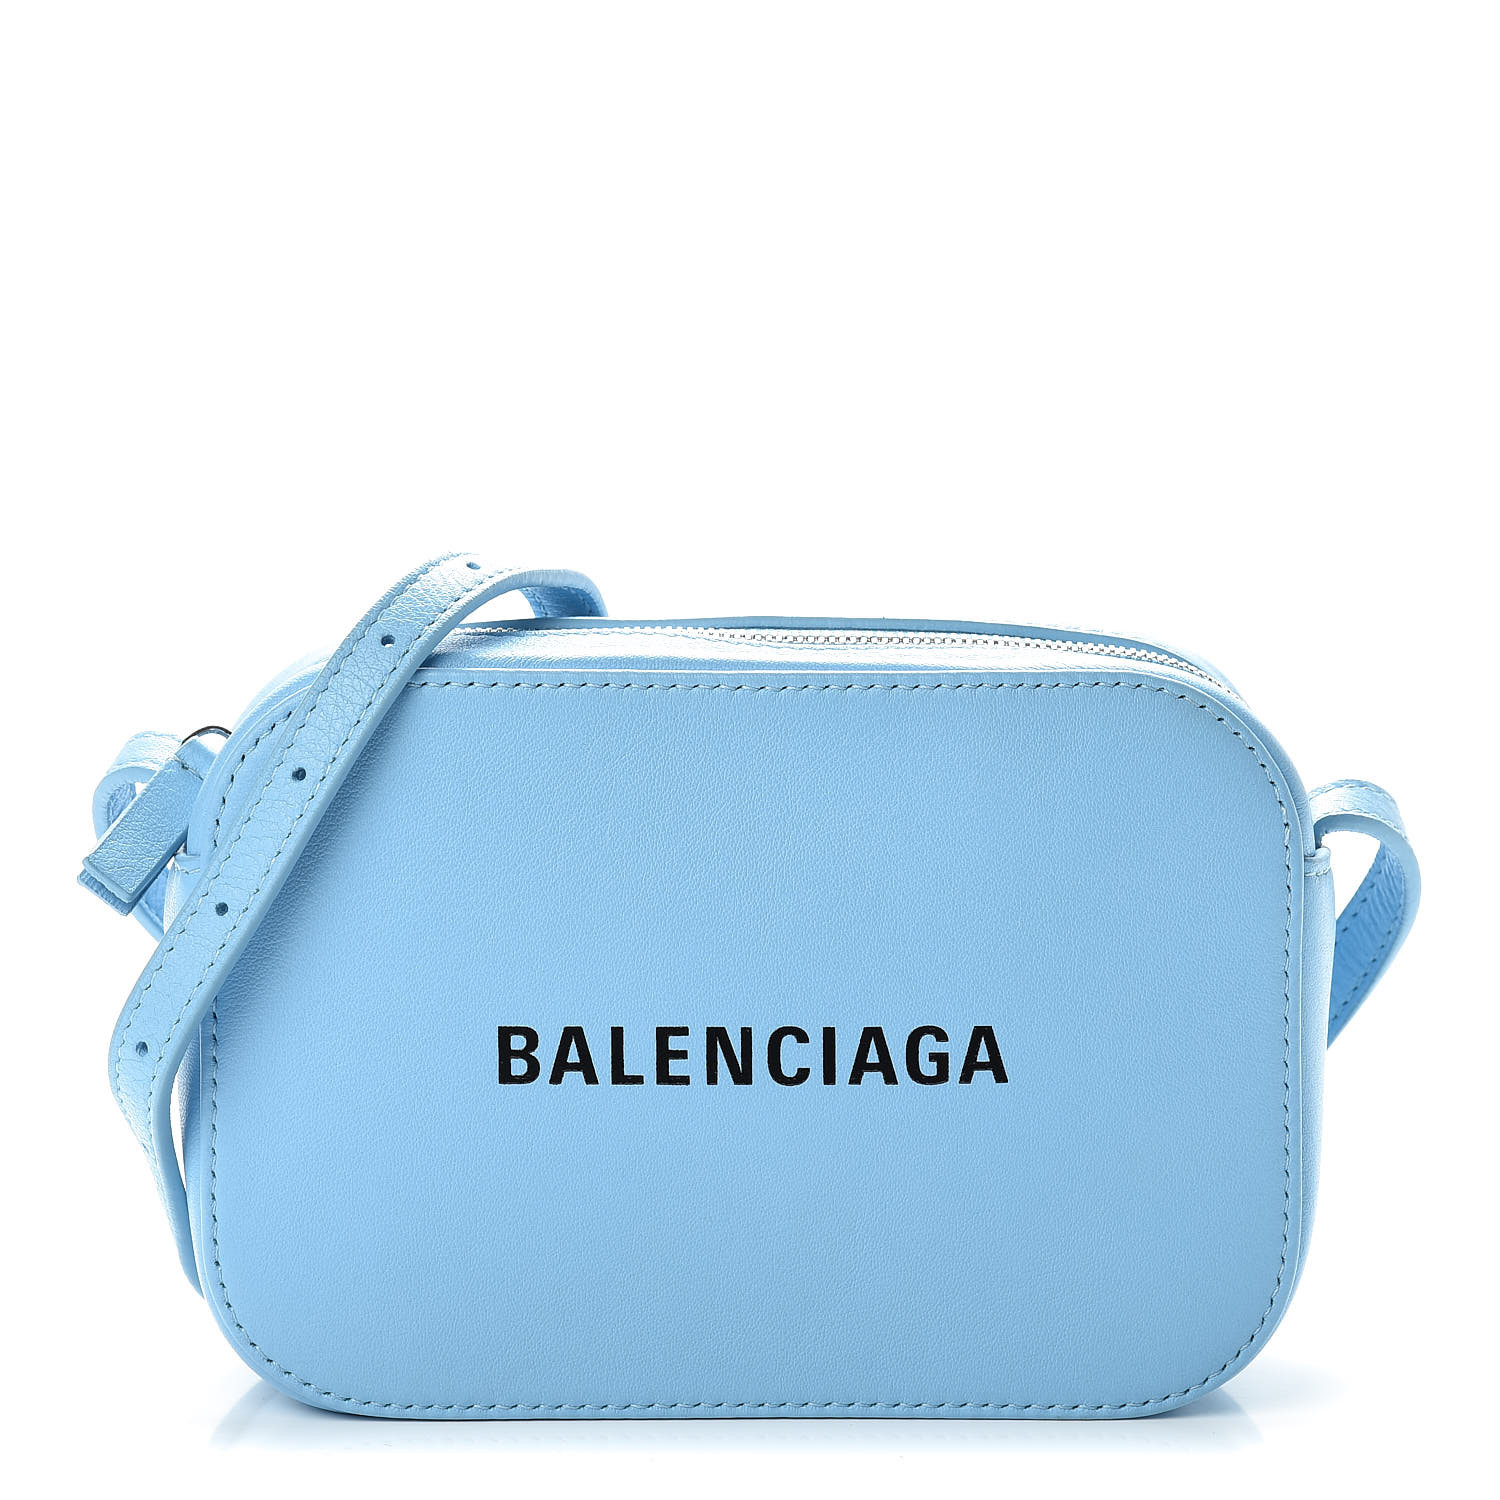 blue balenciaga purse